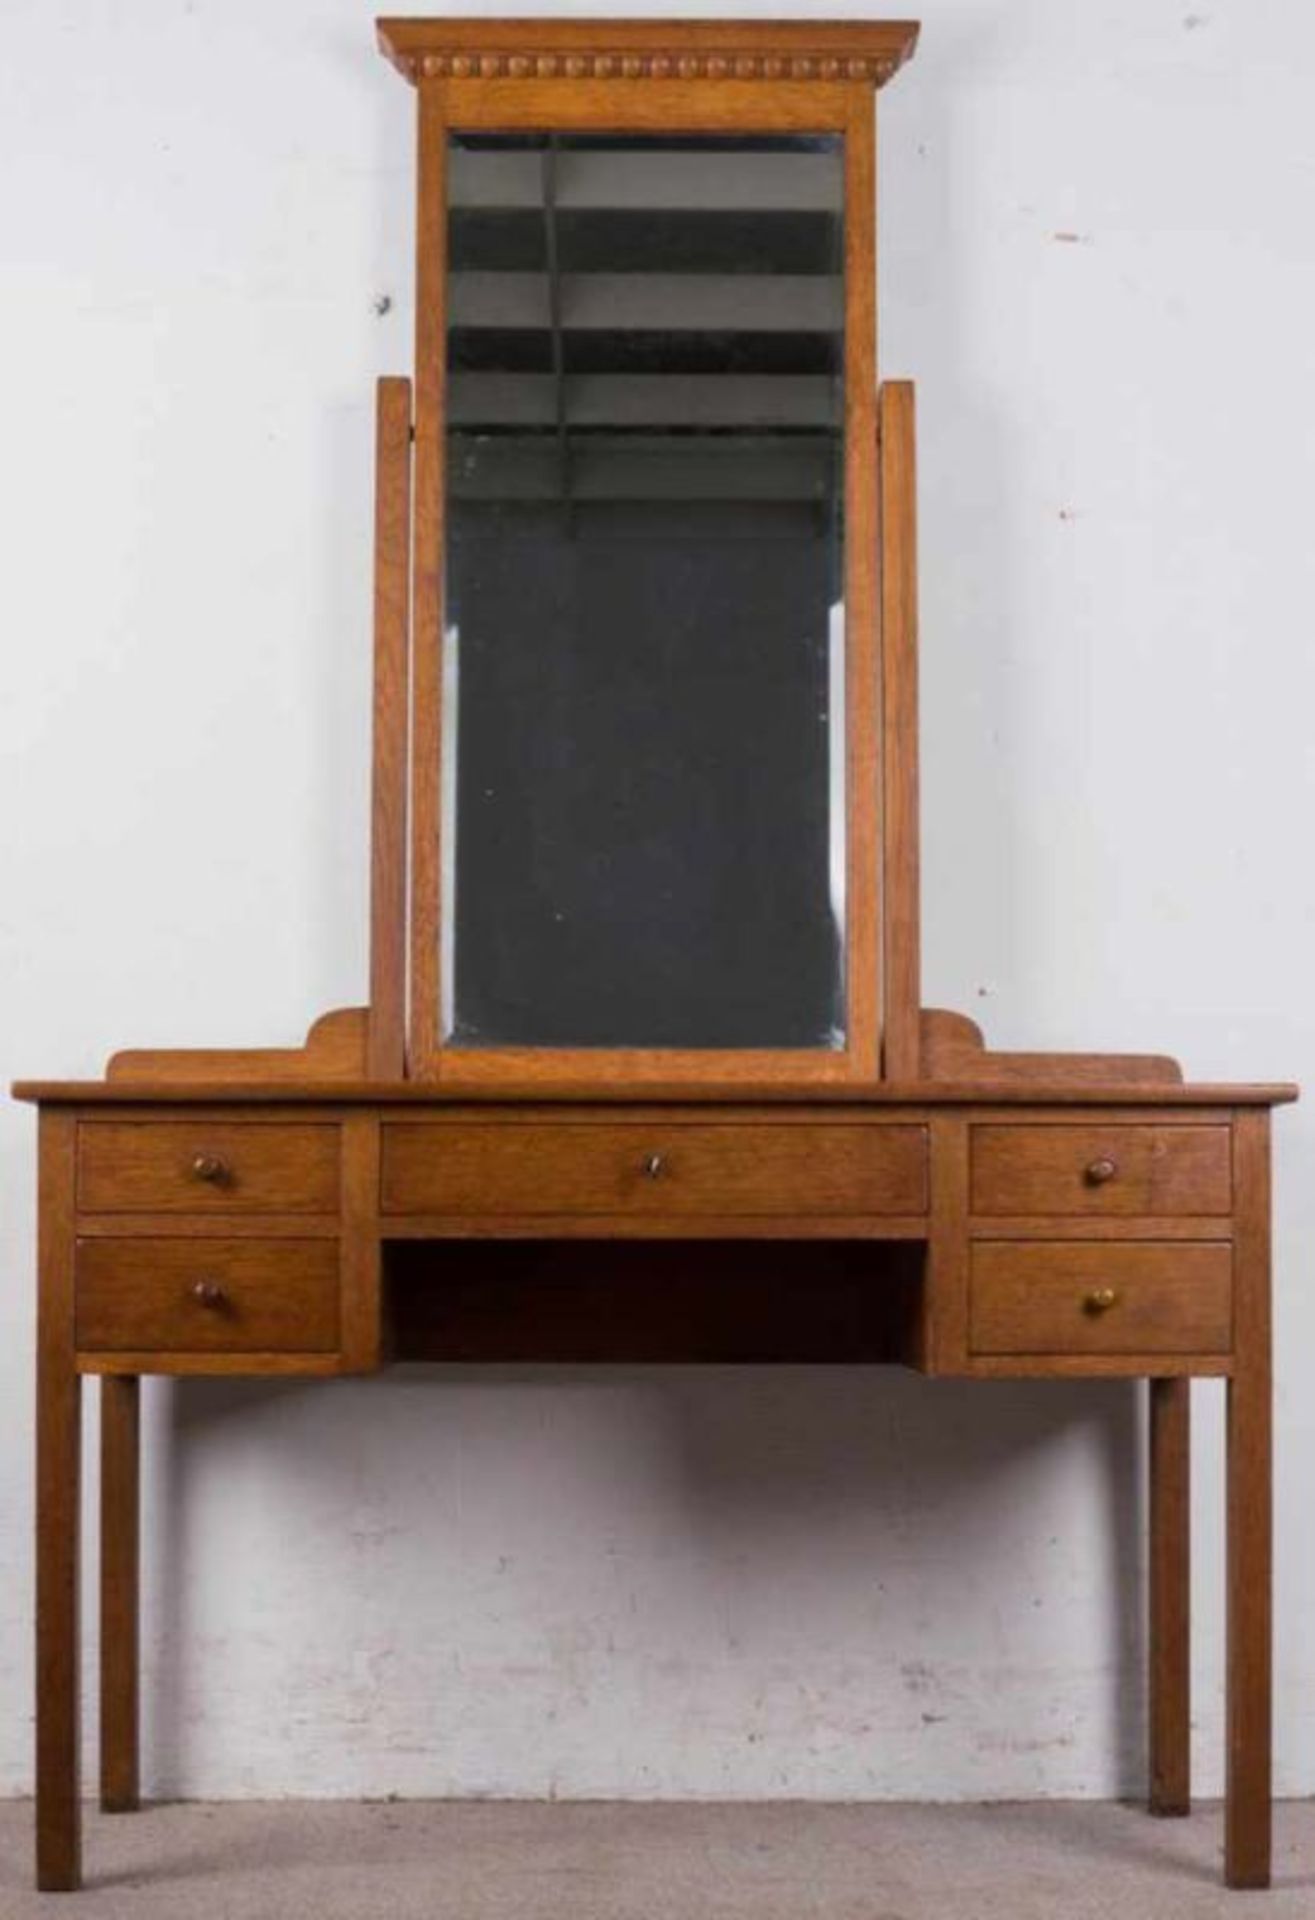 Frisiertisch. Eiche. 1920er/30er Jahre. Tisch mit hohen schlanken Beinen, darauf montierter Spiegel.